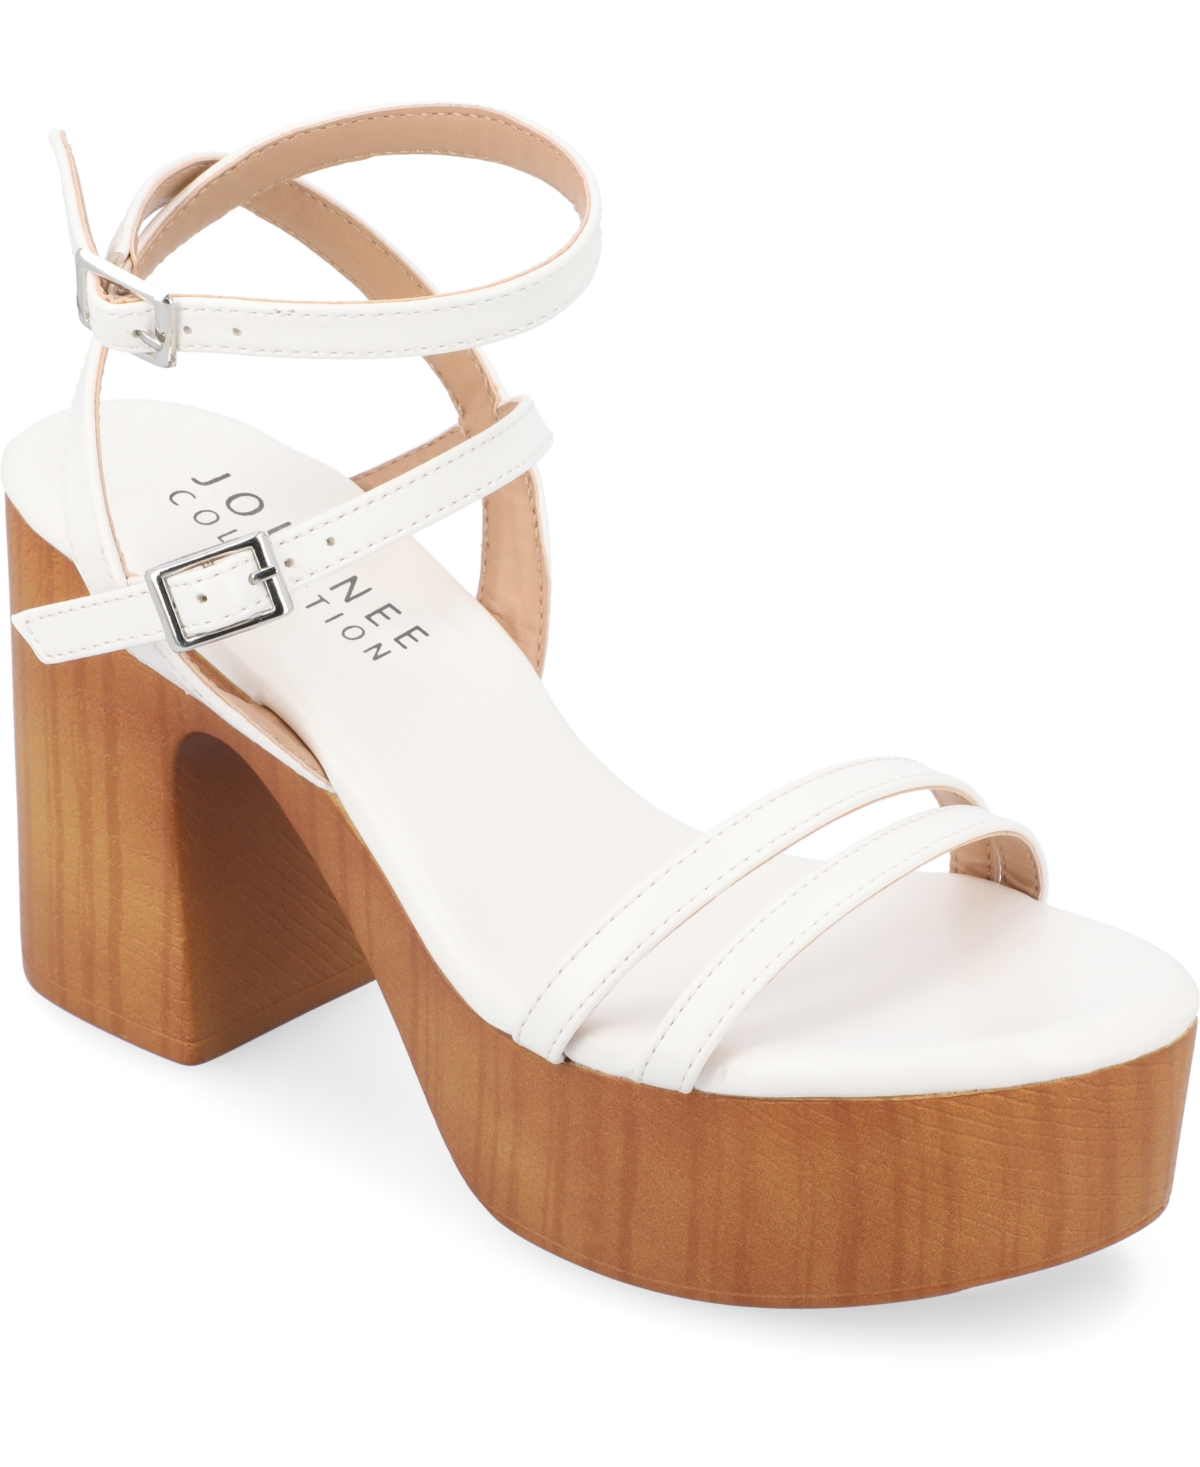 Women's Emerynn Platform Sandals - White